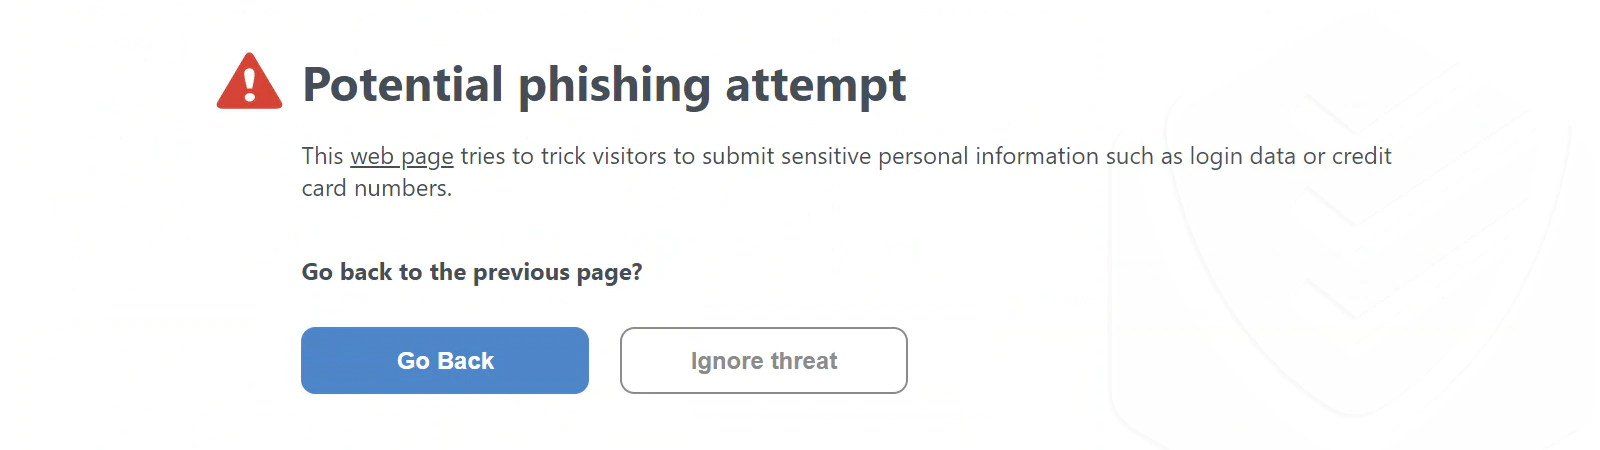 
ESET – powiadomienie o zapobieżeniu atakowi phishingowemu